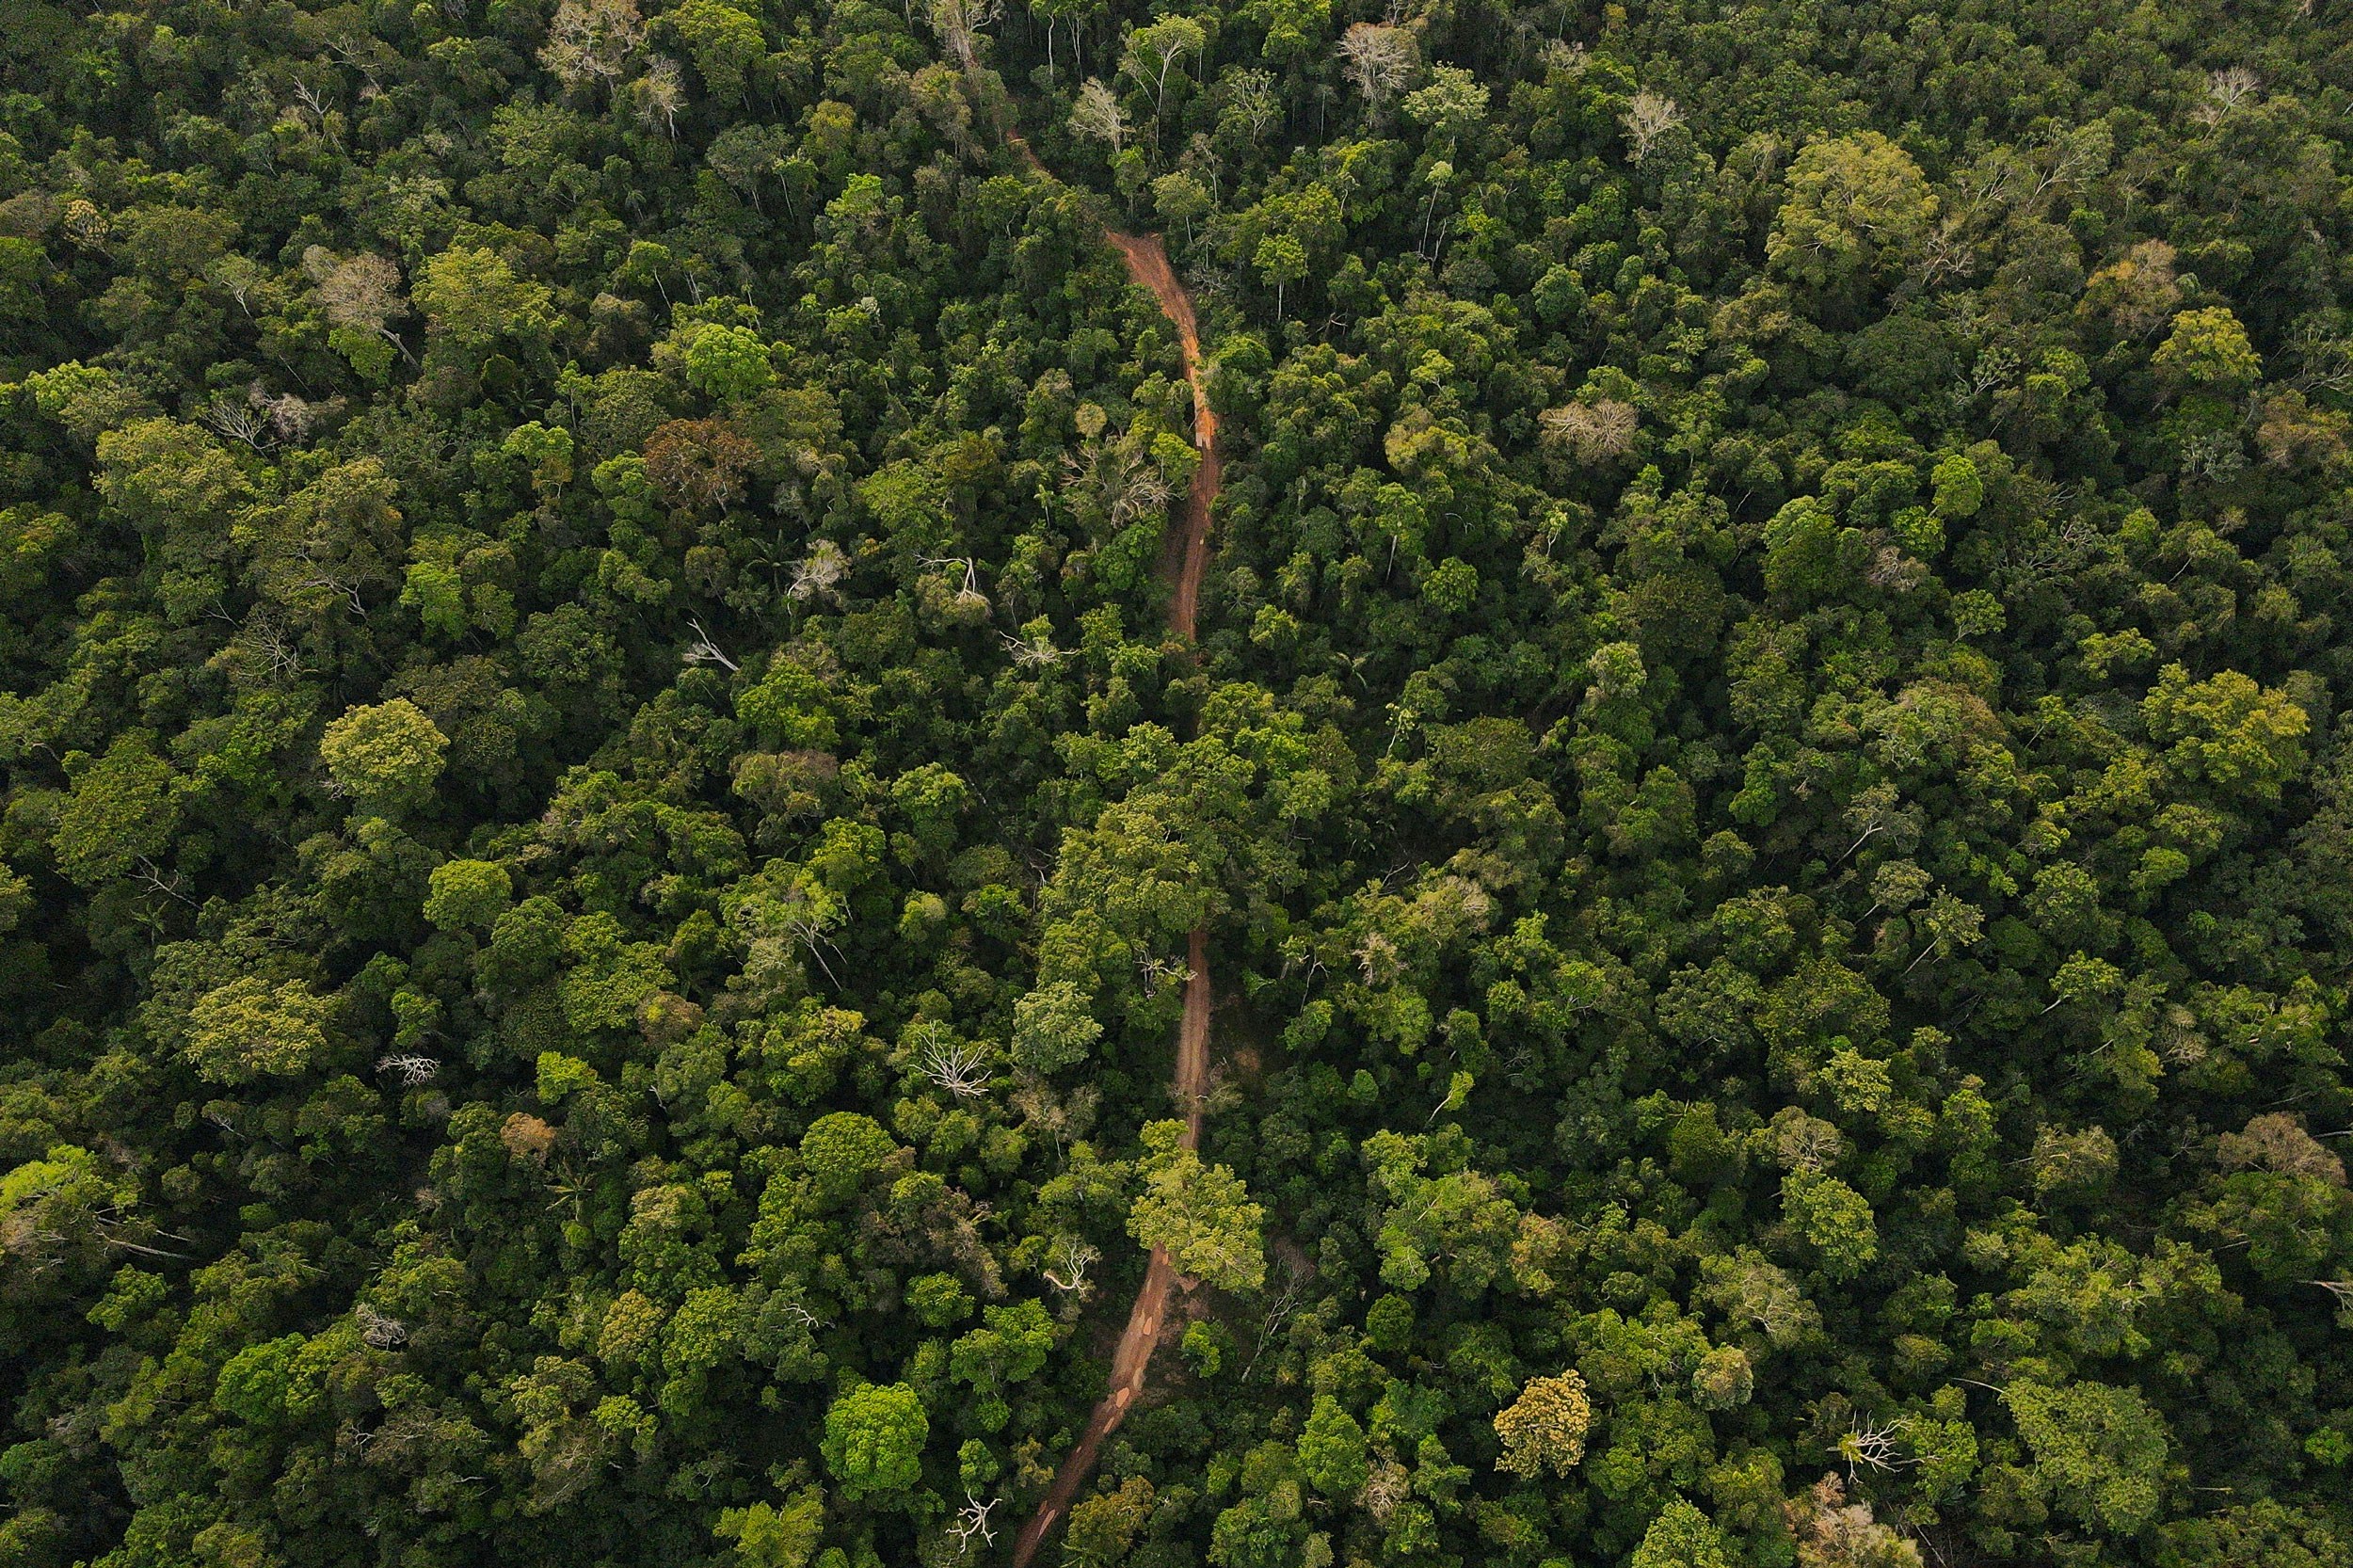 Vista aerea de estradas de retirada ilegal de madeira  nas proximidades da Aldeia Buriti na Terra Indigena Kaxarari, localizada proximo ao distrito de Vista Alegre do Abunã, dritrito de Porto Velho, Rondonia. 09 de agosto de 2022. Foto: Bruno Kelly